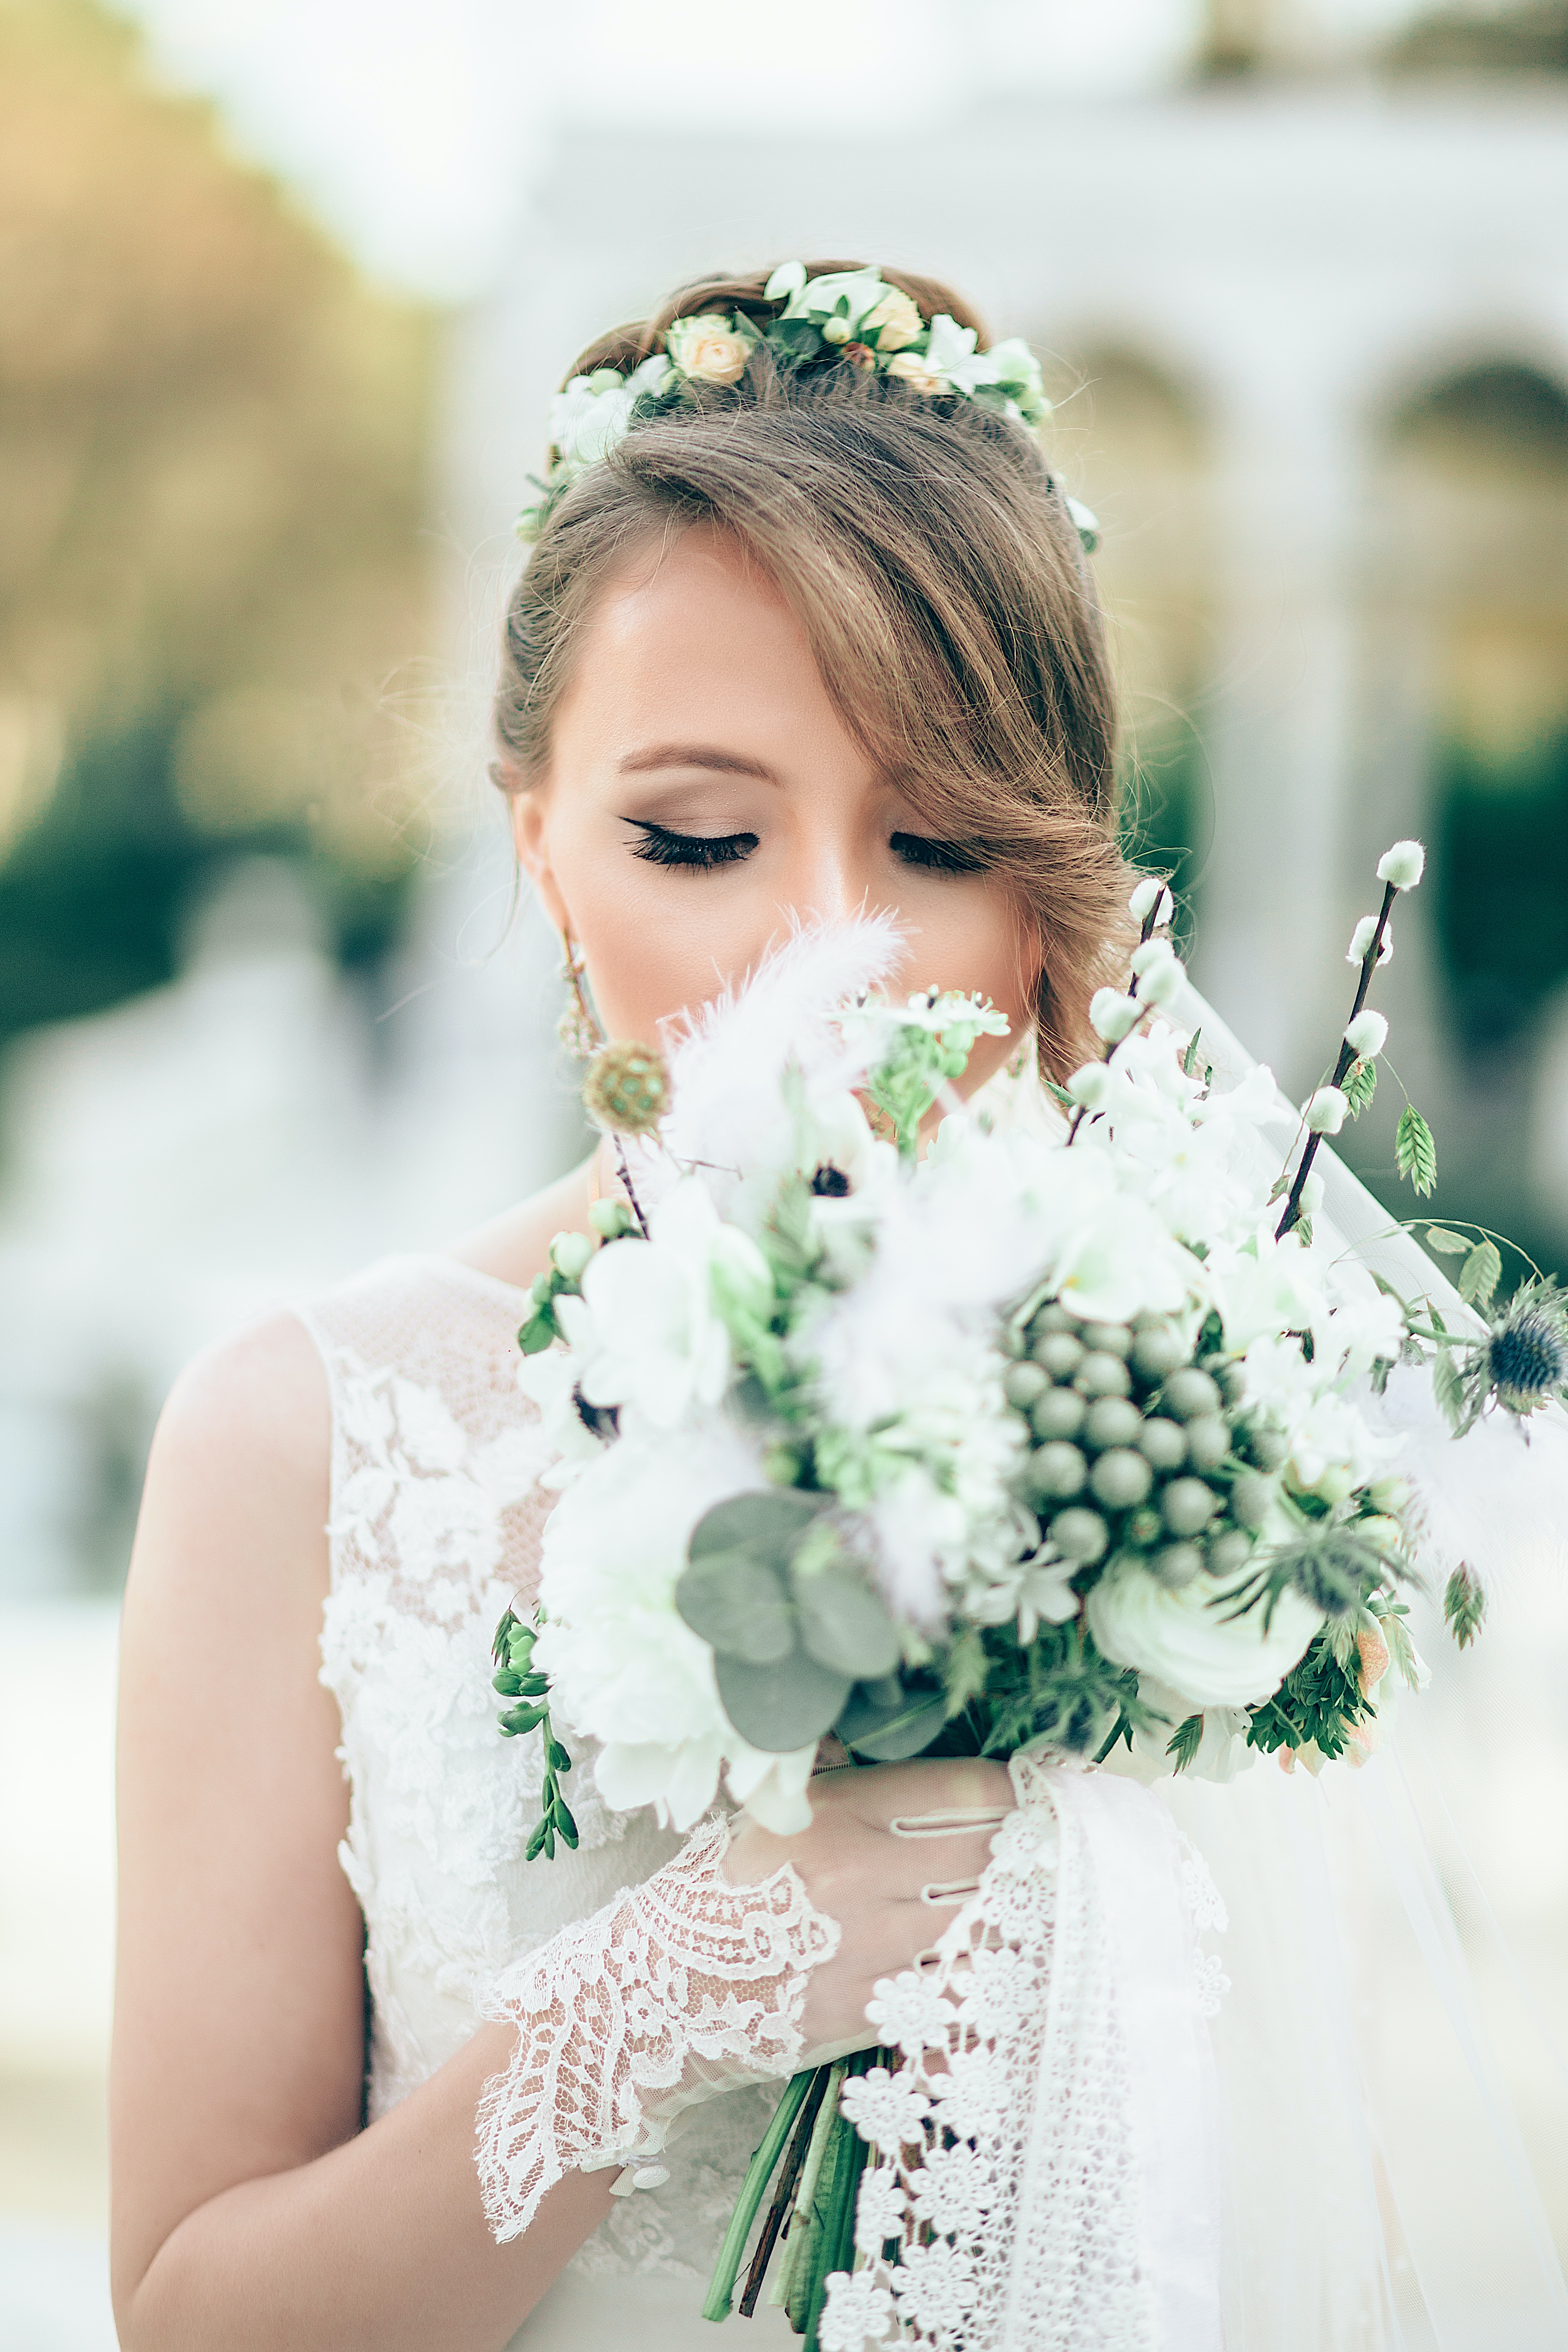 A bride. | Source: Unsplash